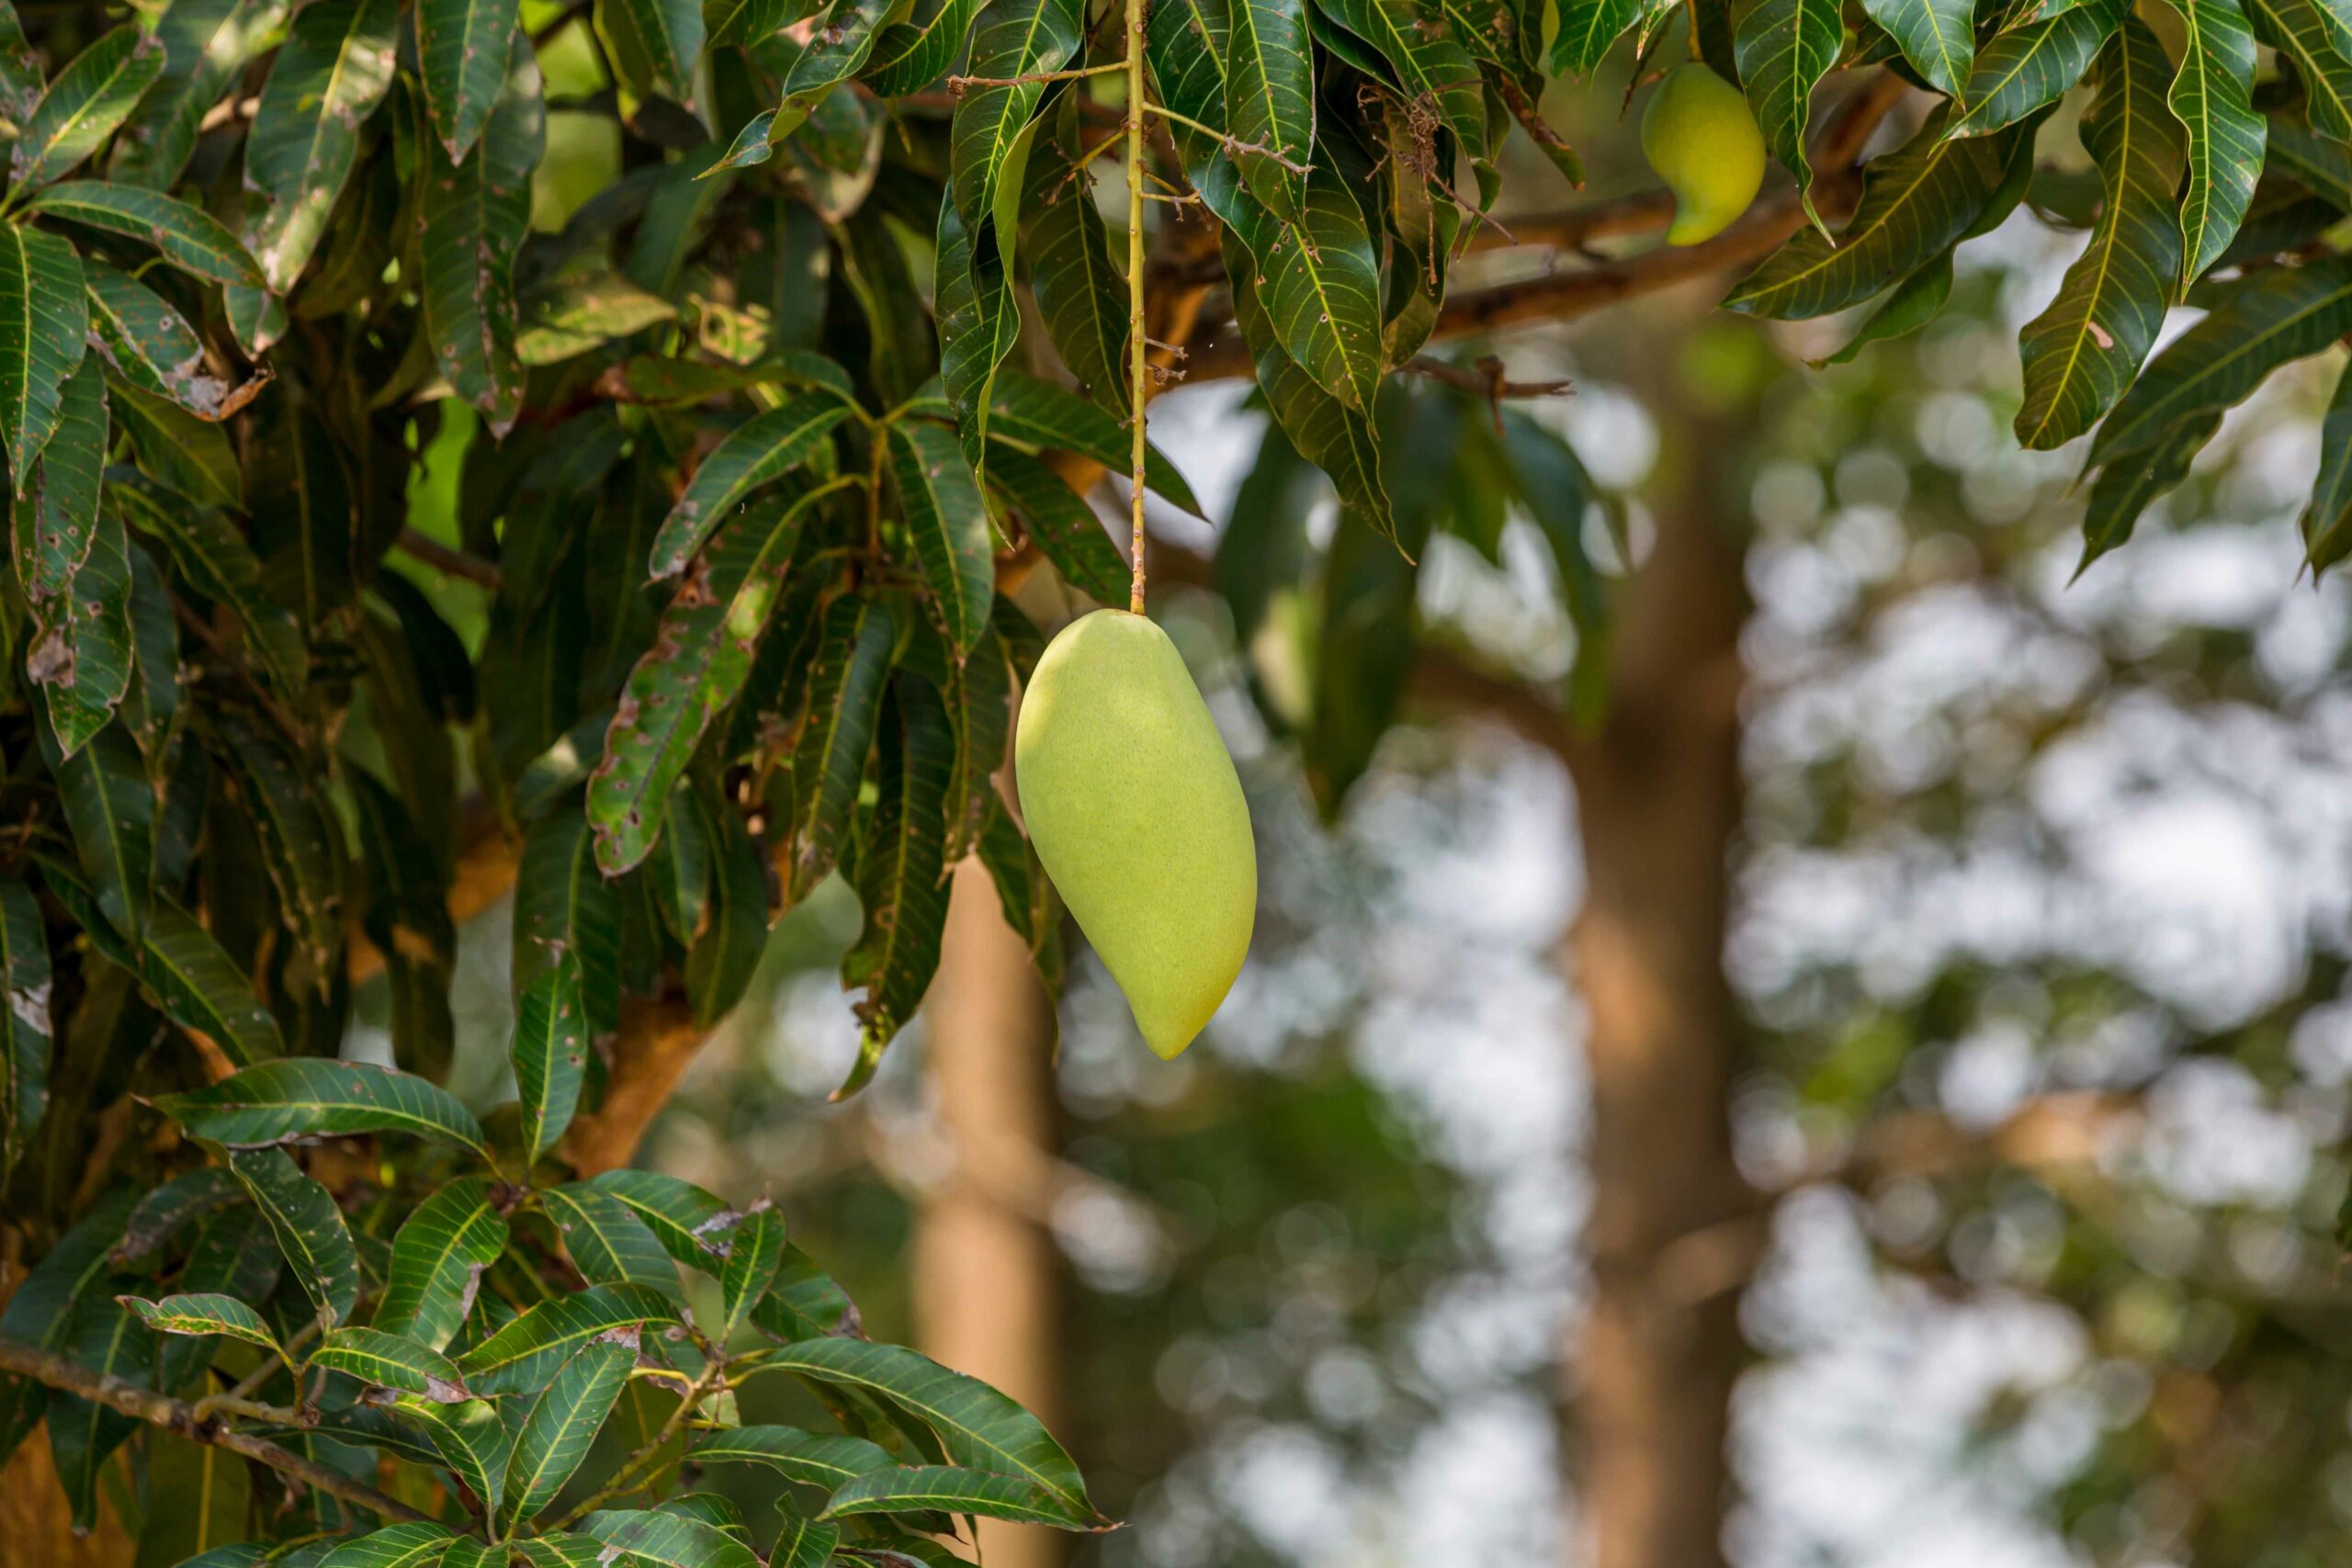 Uno de los principales desafíos que enfrenta la industria del mango en Sinaloa es el cambio climático, que puede afectar las condiciones ideales para el cultivo de esta fruta. Sin embargo, la industria ha demostrado su capacidad para adaptarse a estos cambios y encontrar soluciones innovadoras para garantizar la producción sostenible de mangos de alta calidad.